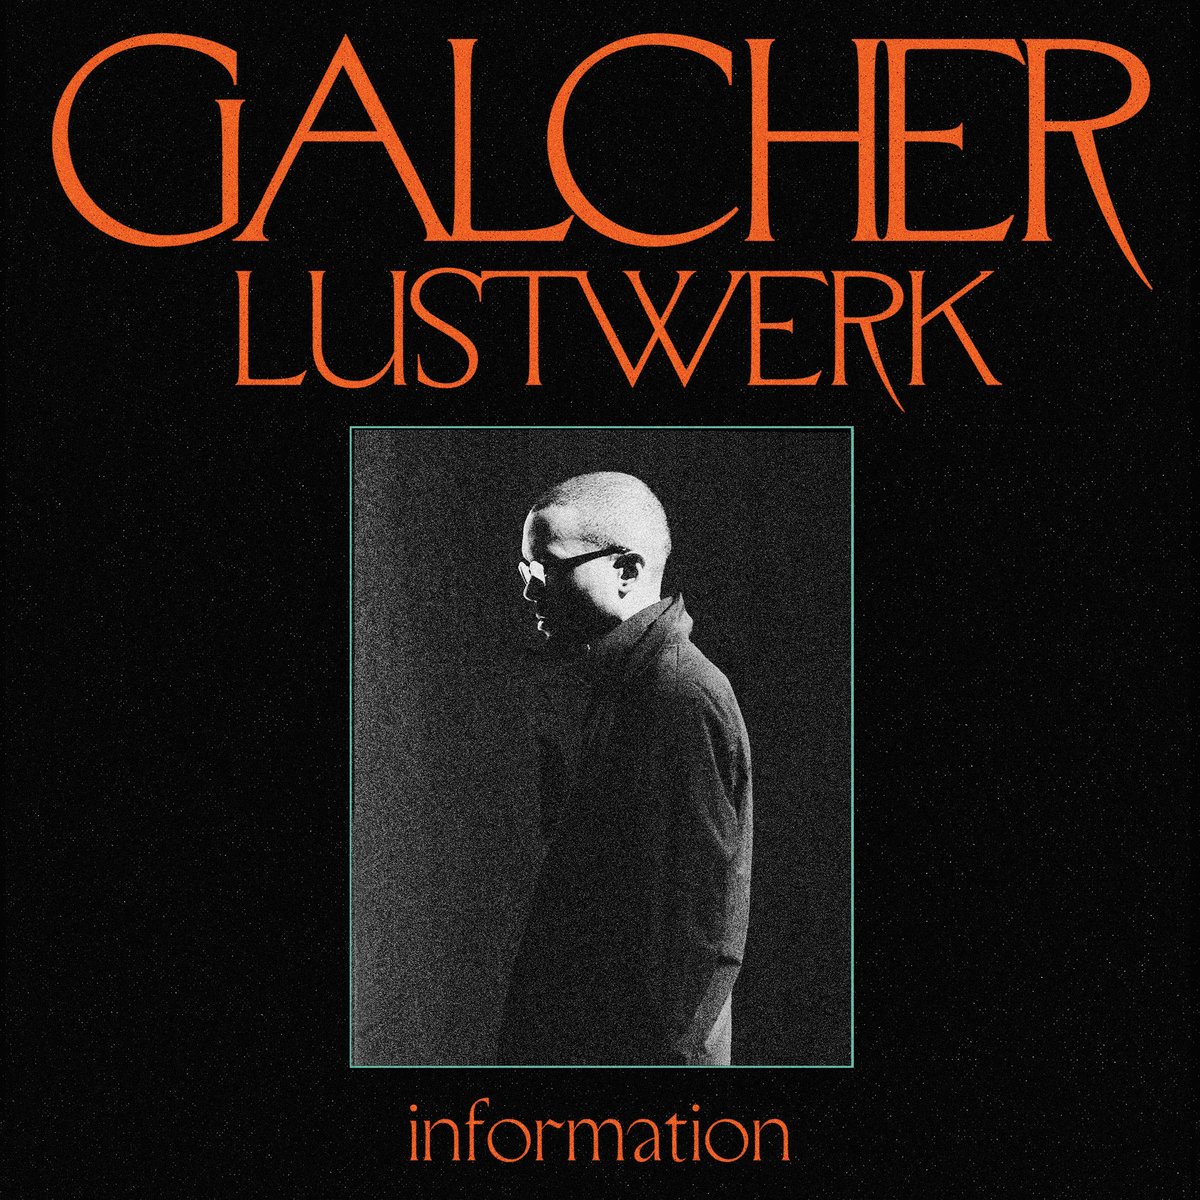 Galcher_Lustwerk_Information